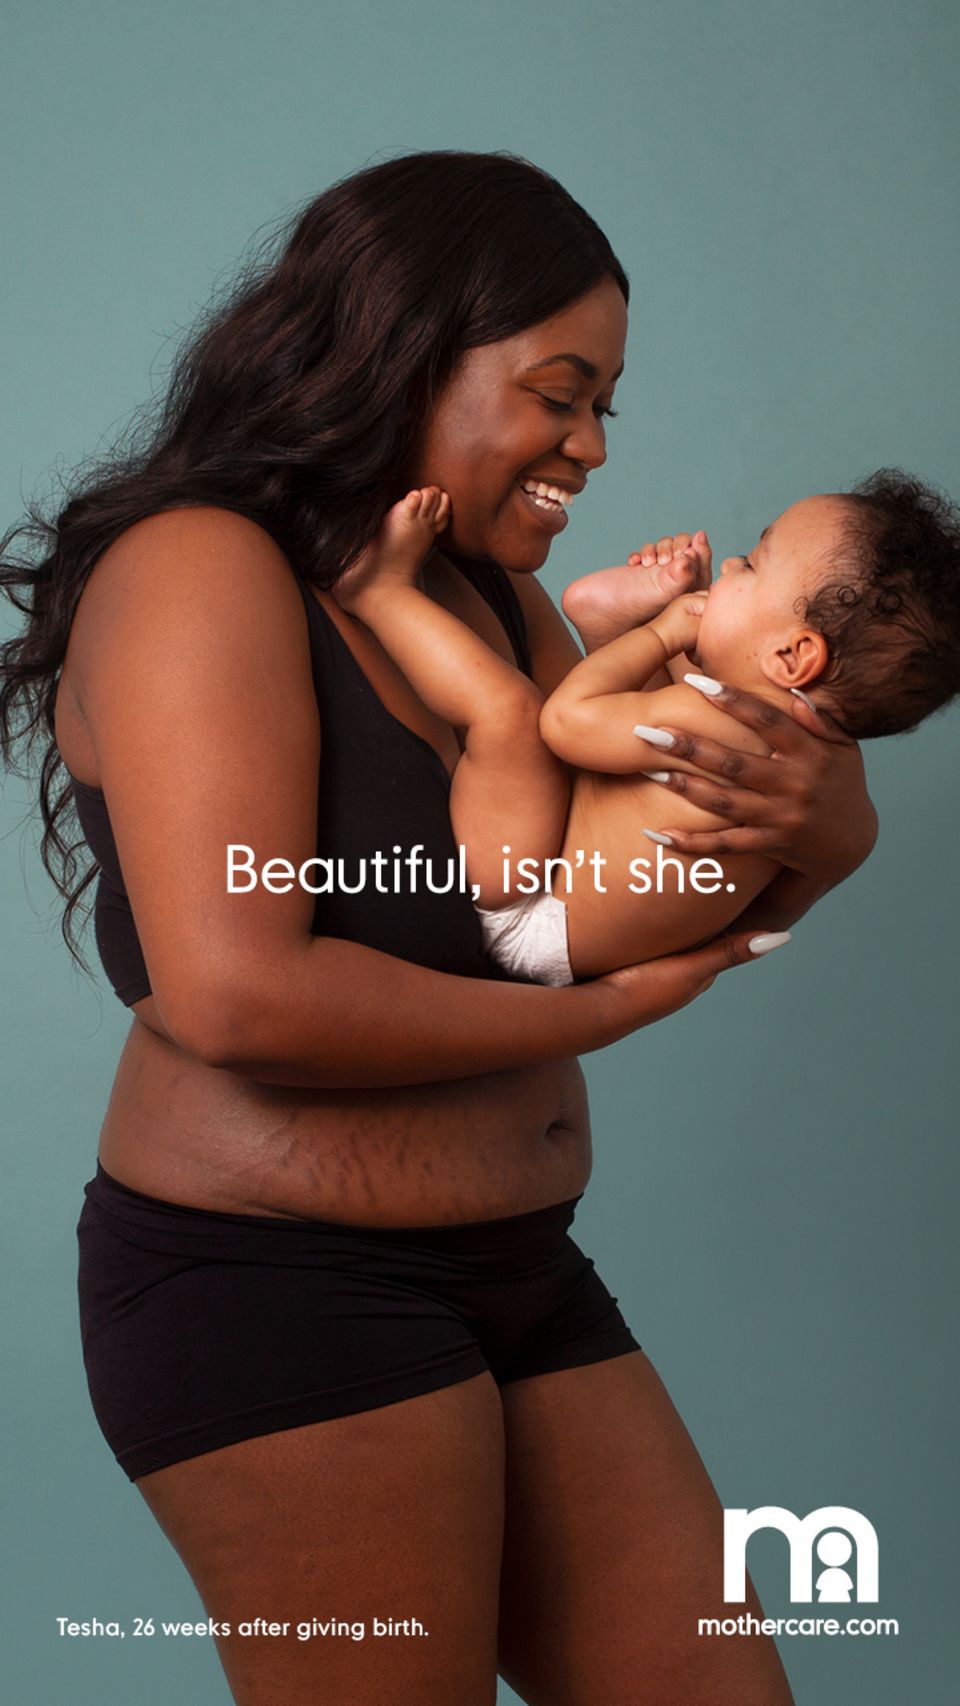 Wen stören die paar Dehnungsstreifen? Mama Tesha präsentiert überglücklich ihr Baby – und ihren Körper.